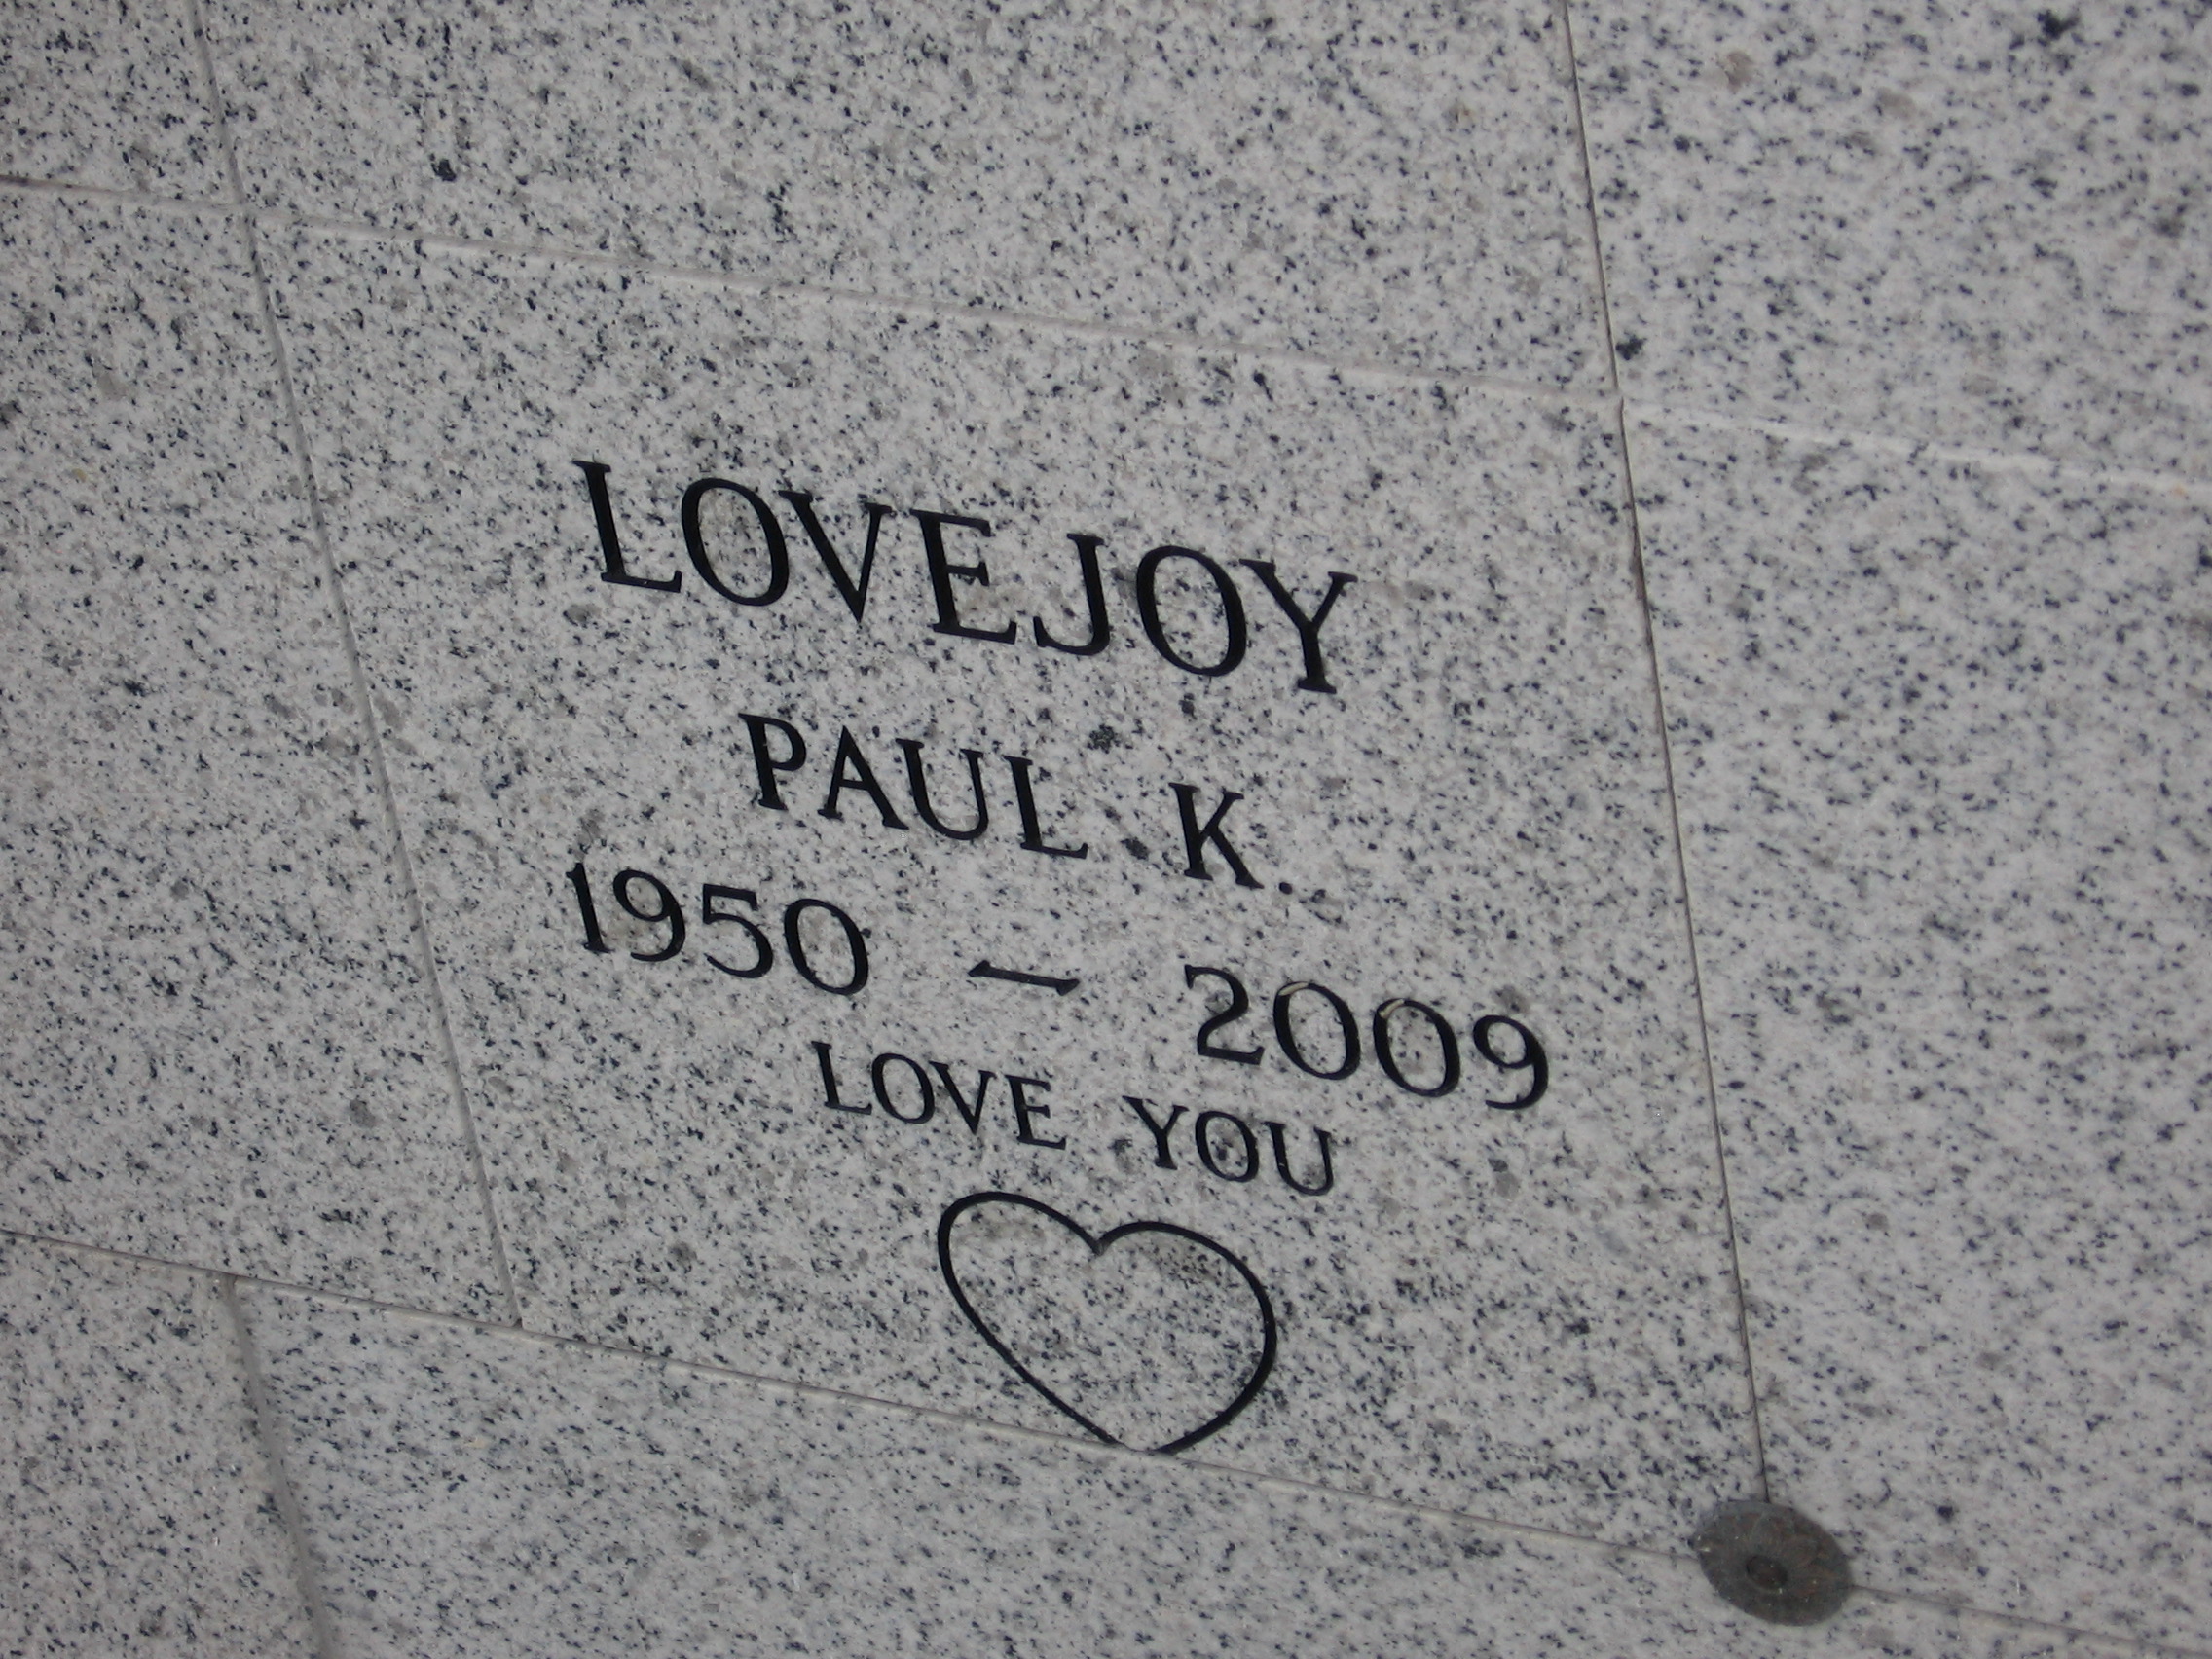 Paul K Lovejoy